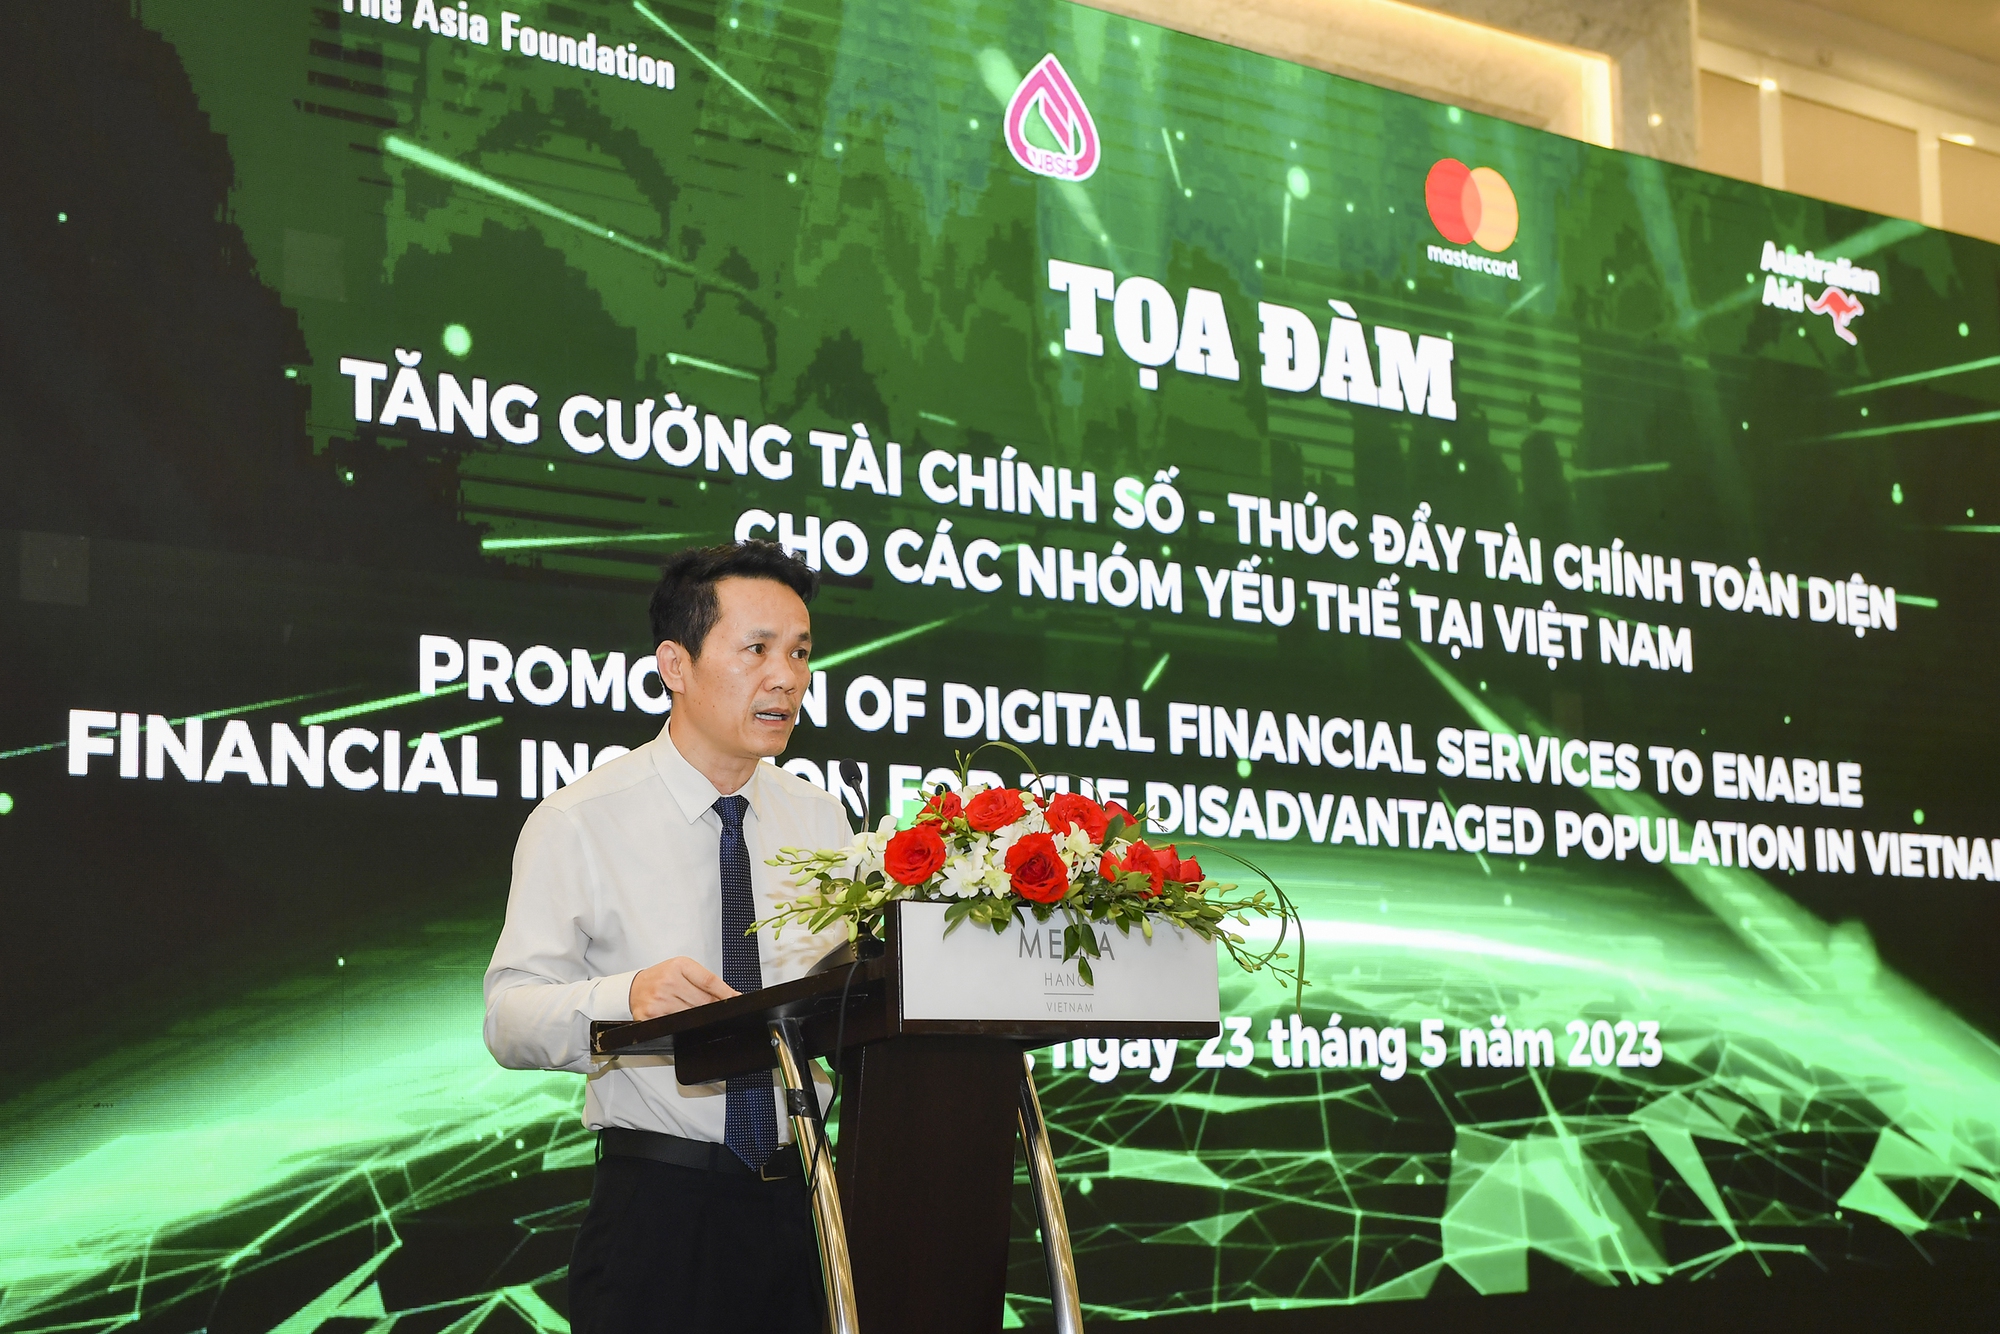 Ứng dụng công nghệ số, tăng cường tài chính số cho người yếu thế ở Việt Nam - Ảnh 1.